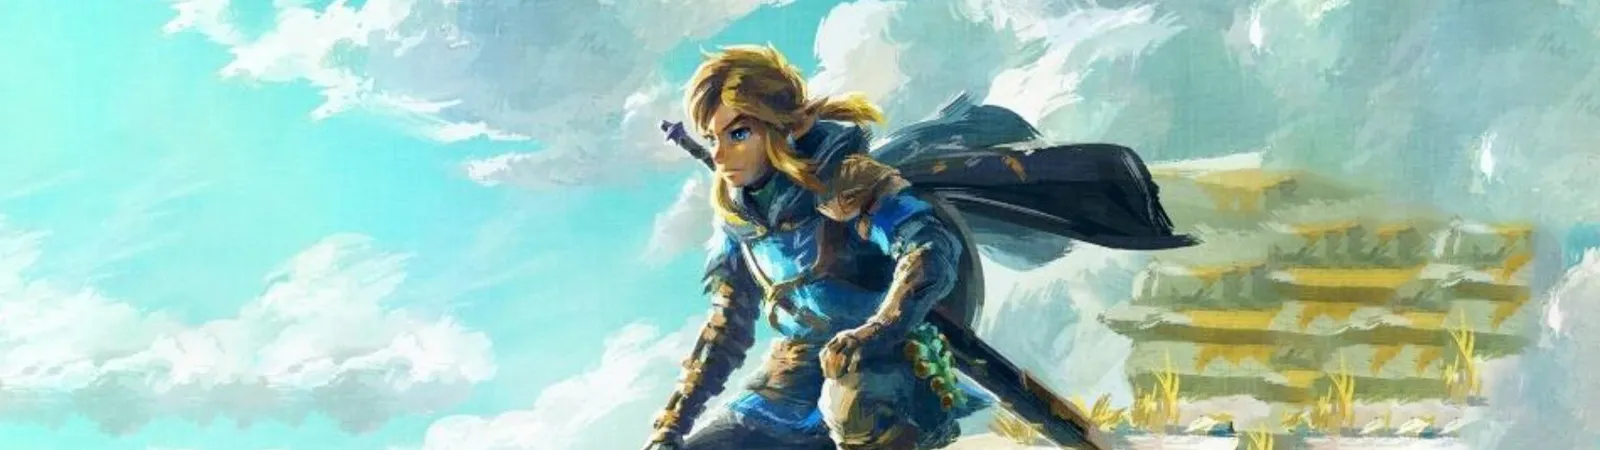 The Zelda Tears of the Kingdom 1 image